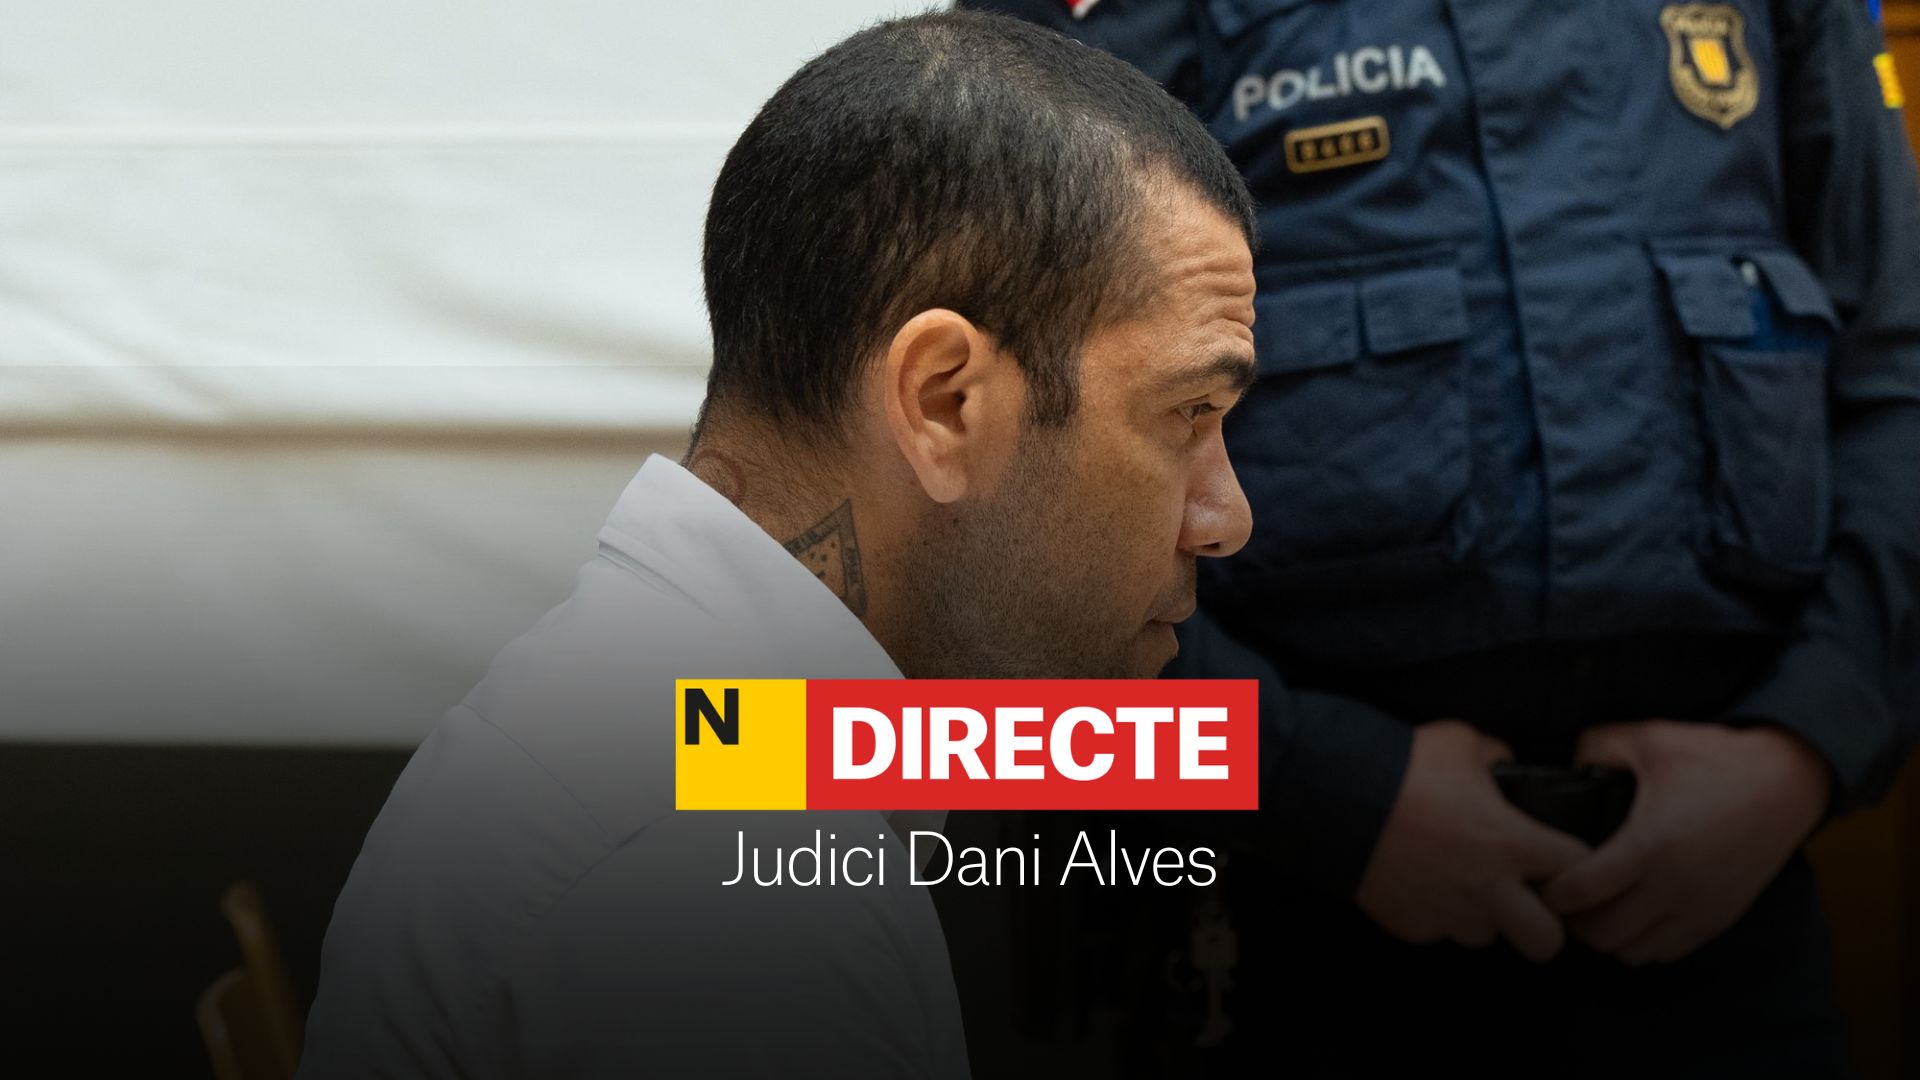 Judici a Dani Alves, DIRECTE | Declaracions de Joana Sanz i els testimonis